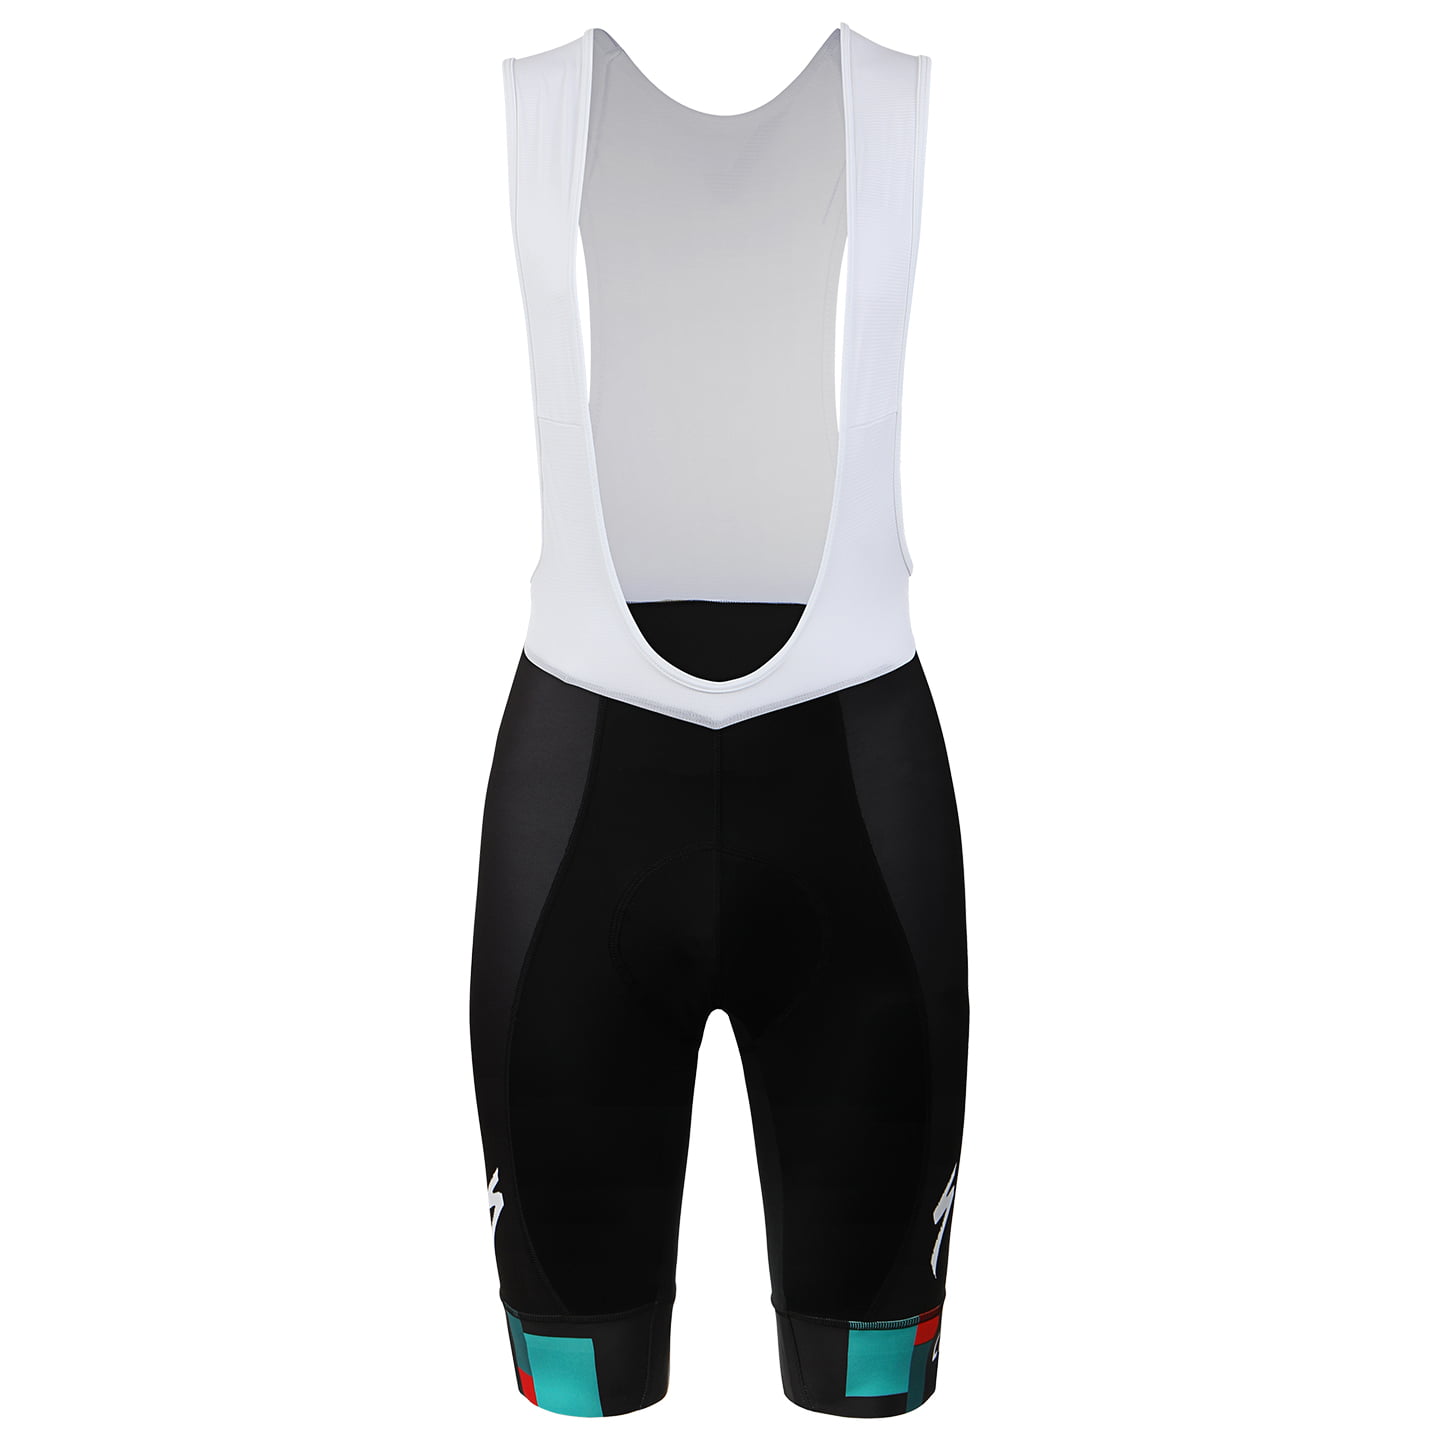 BORA-hansgrohe Race 2022 Bib Shorts, for men, size 3XL, Cycling bibs, Bike gear